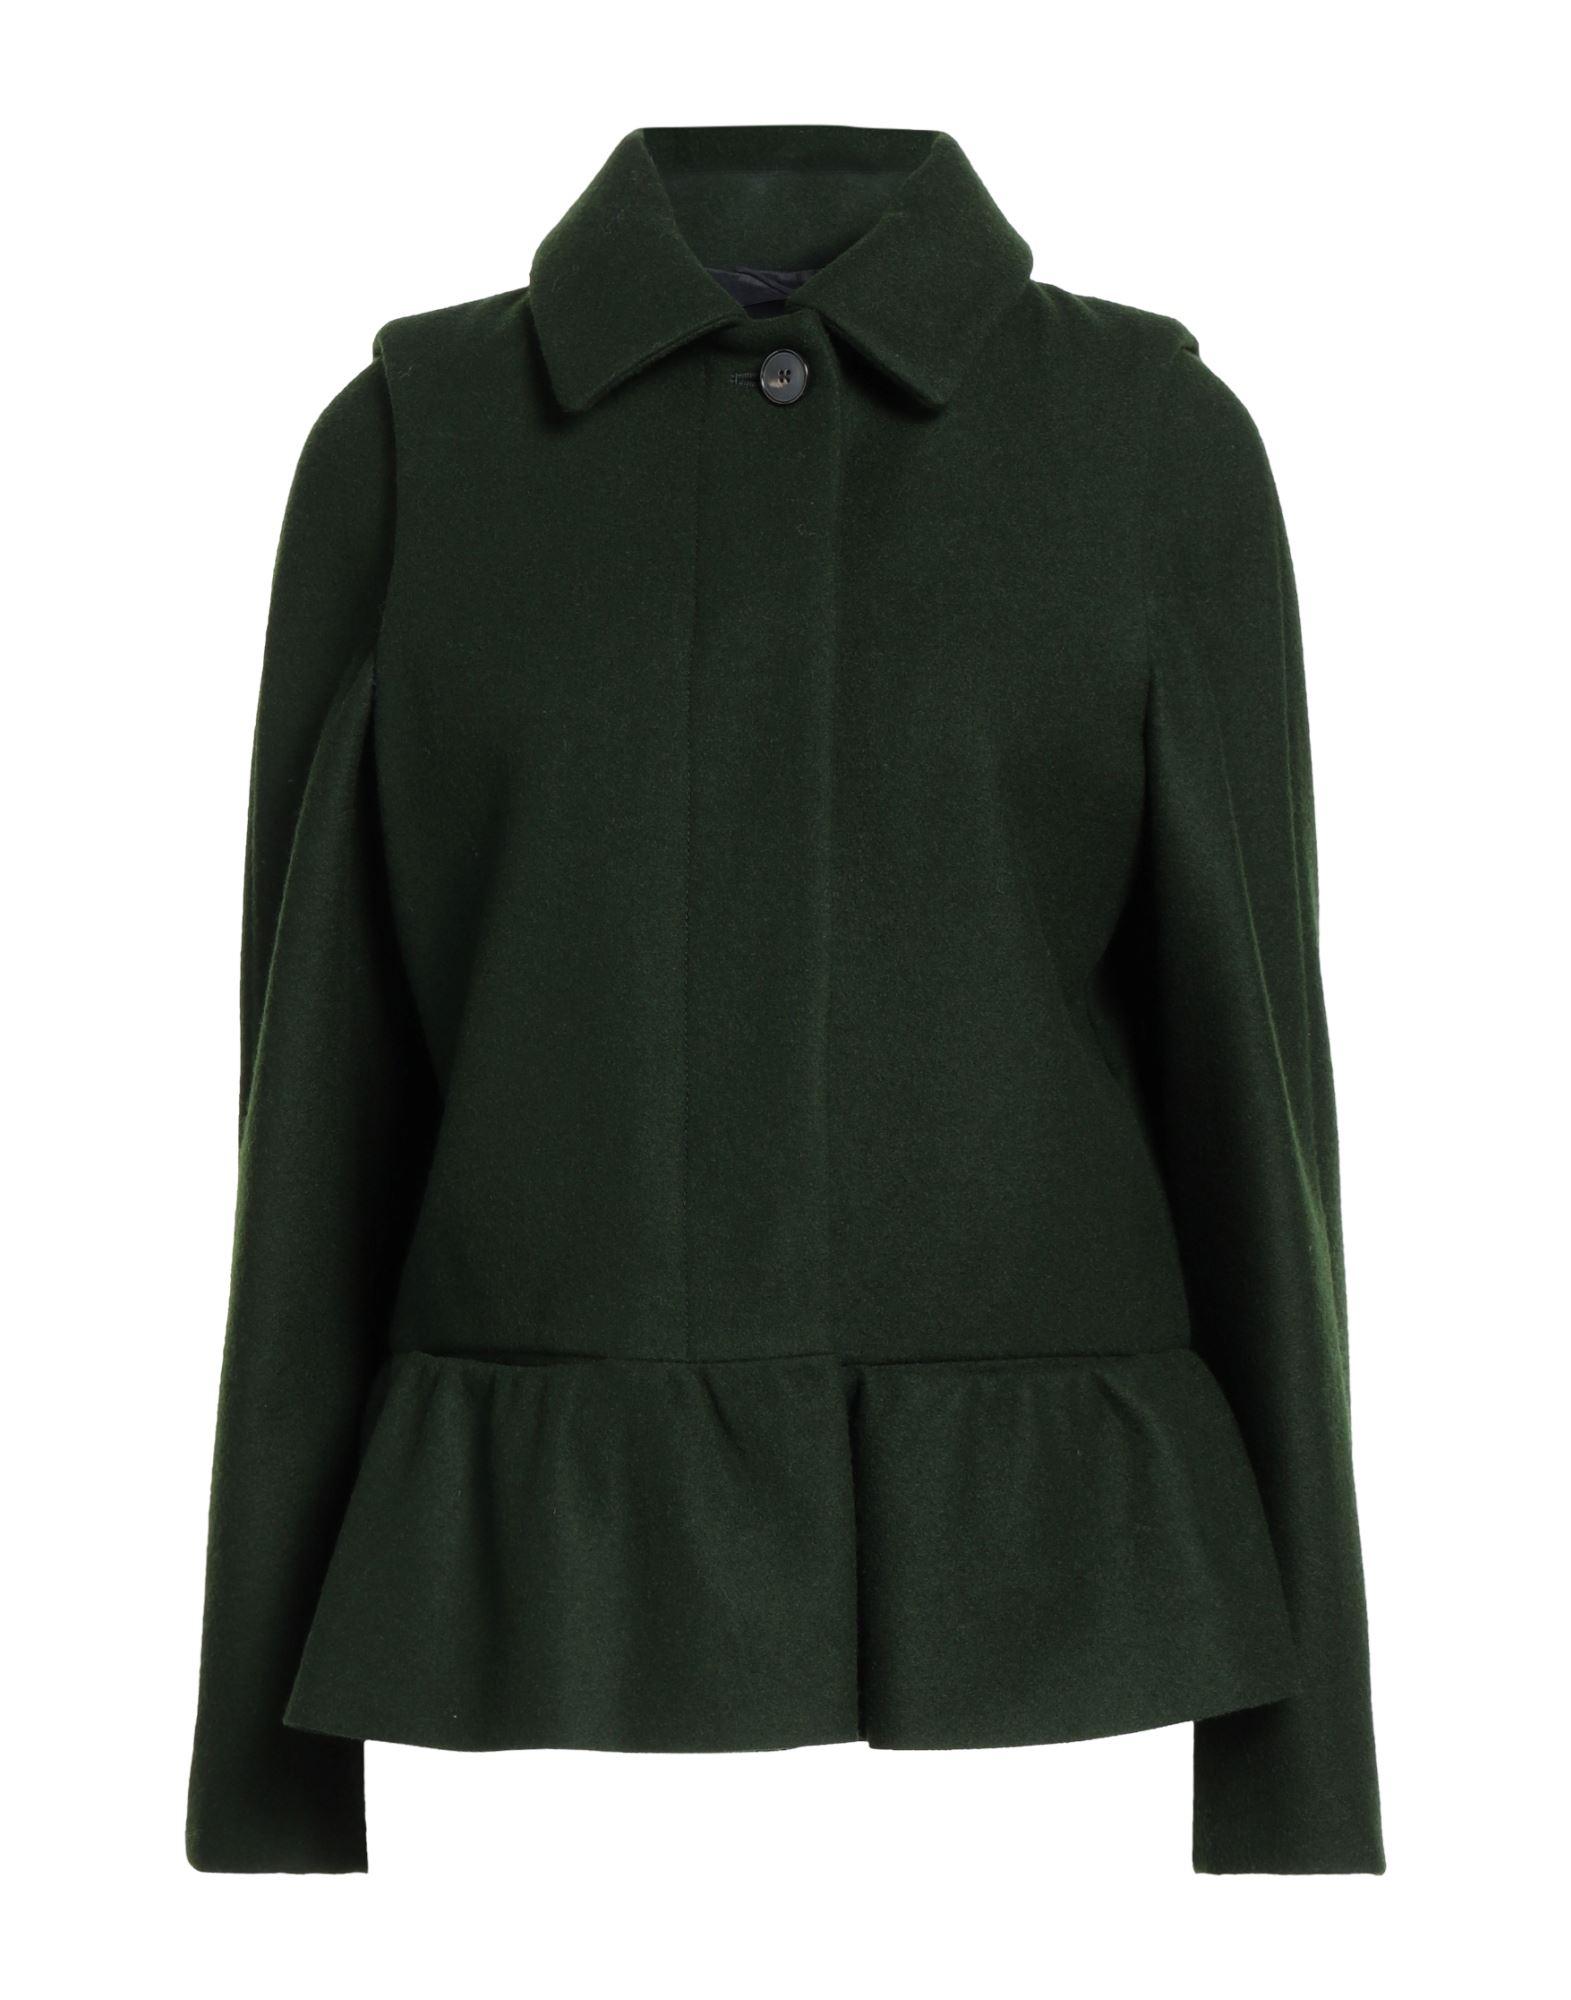 Schneiders Wool Coat in Dark Green (Green) | Lyst